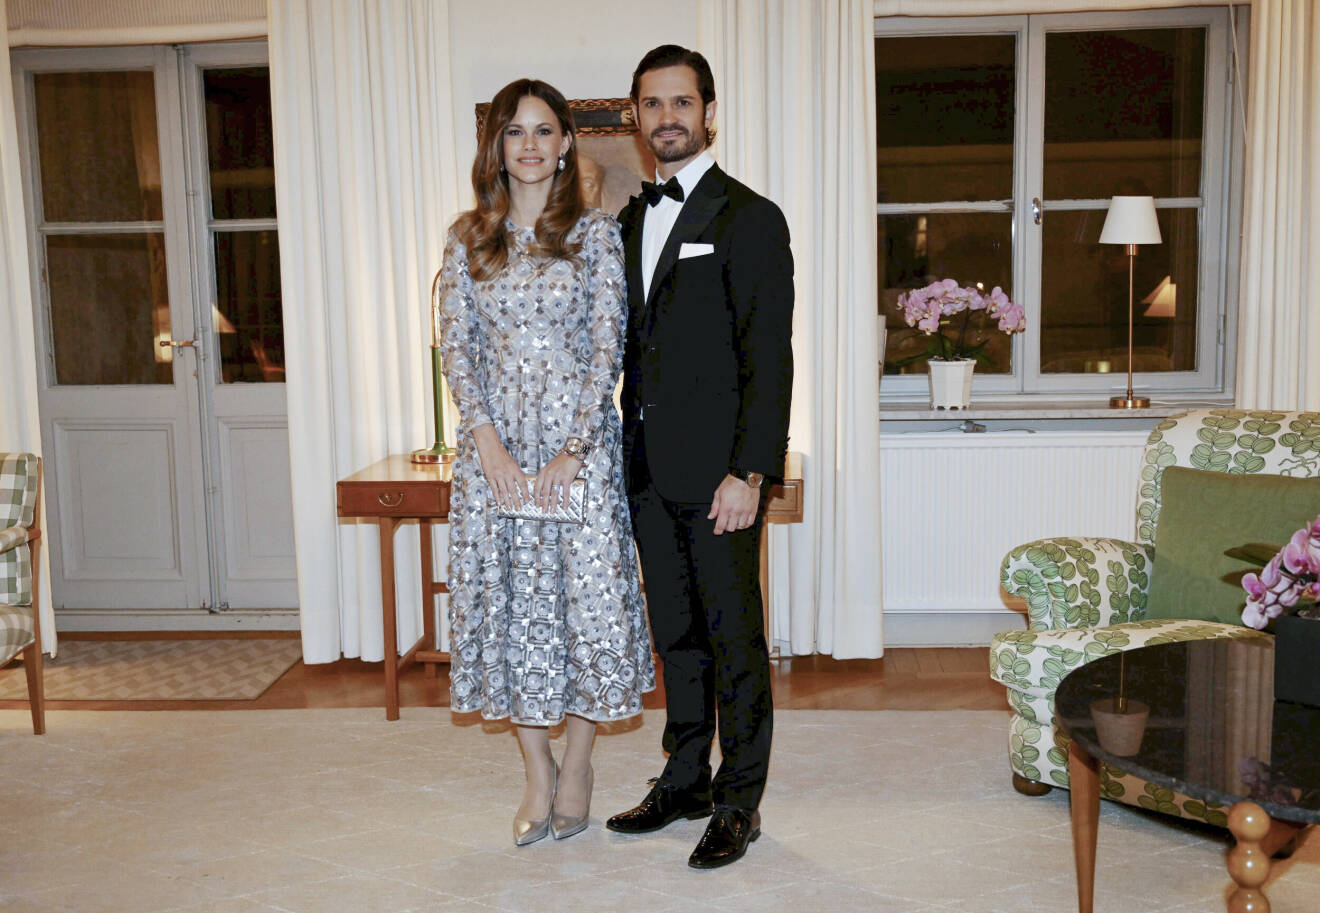 Prinsessan Sofia på landshövdingens middag i Värmland klädd i klänning från Andiata